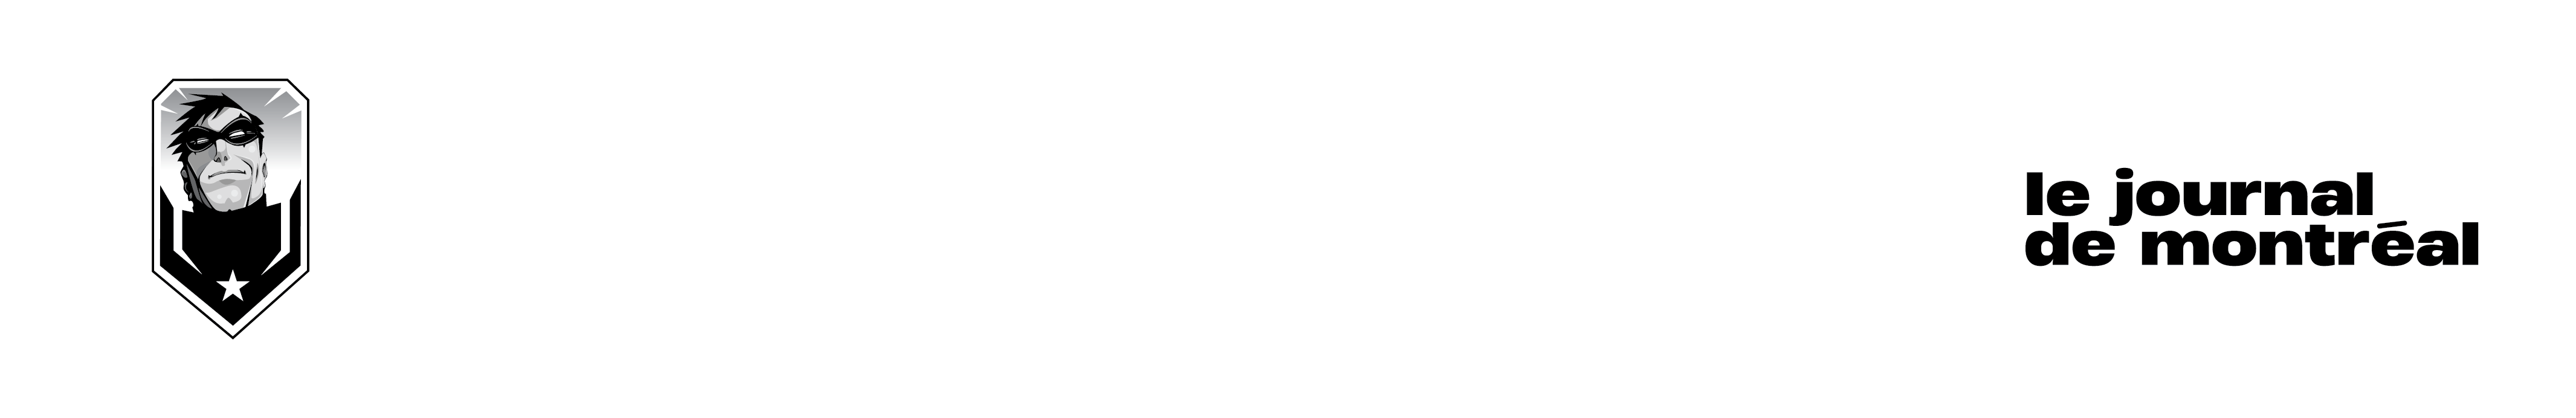 Lancement_27 mars 2018_FR - Comiccon de Montréal